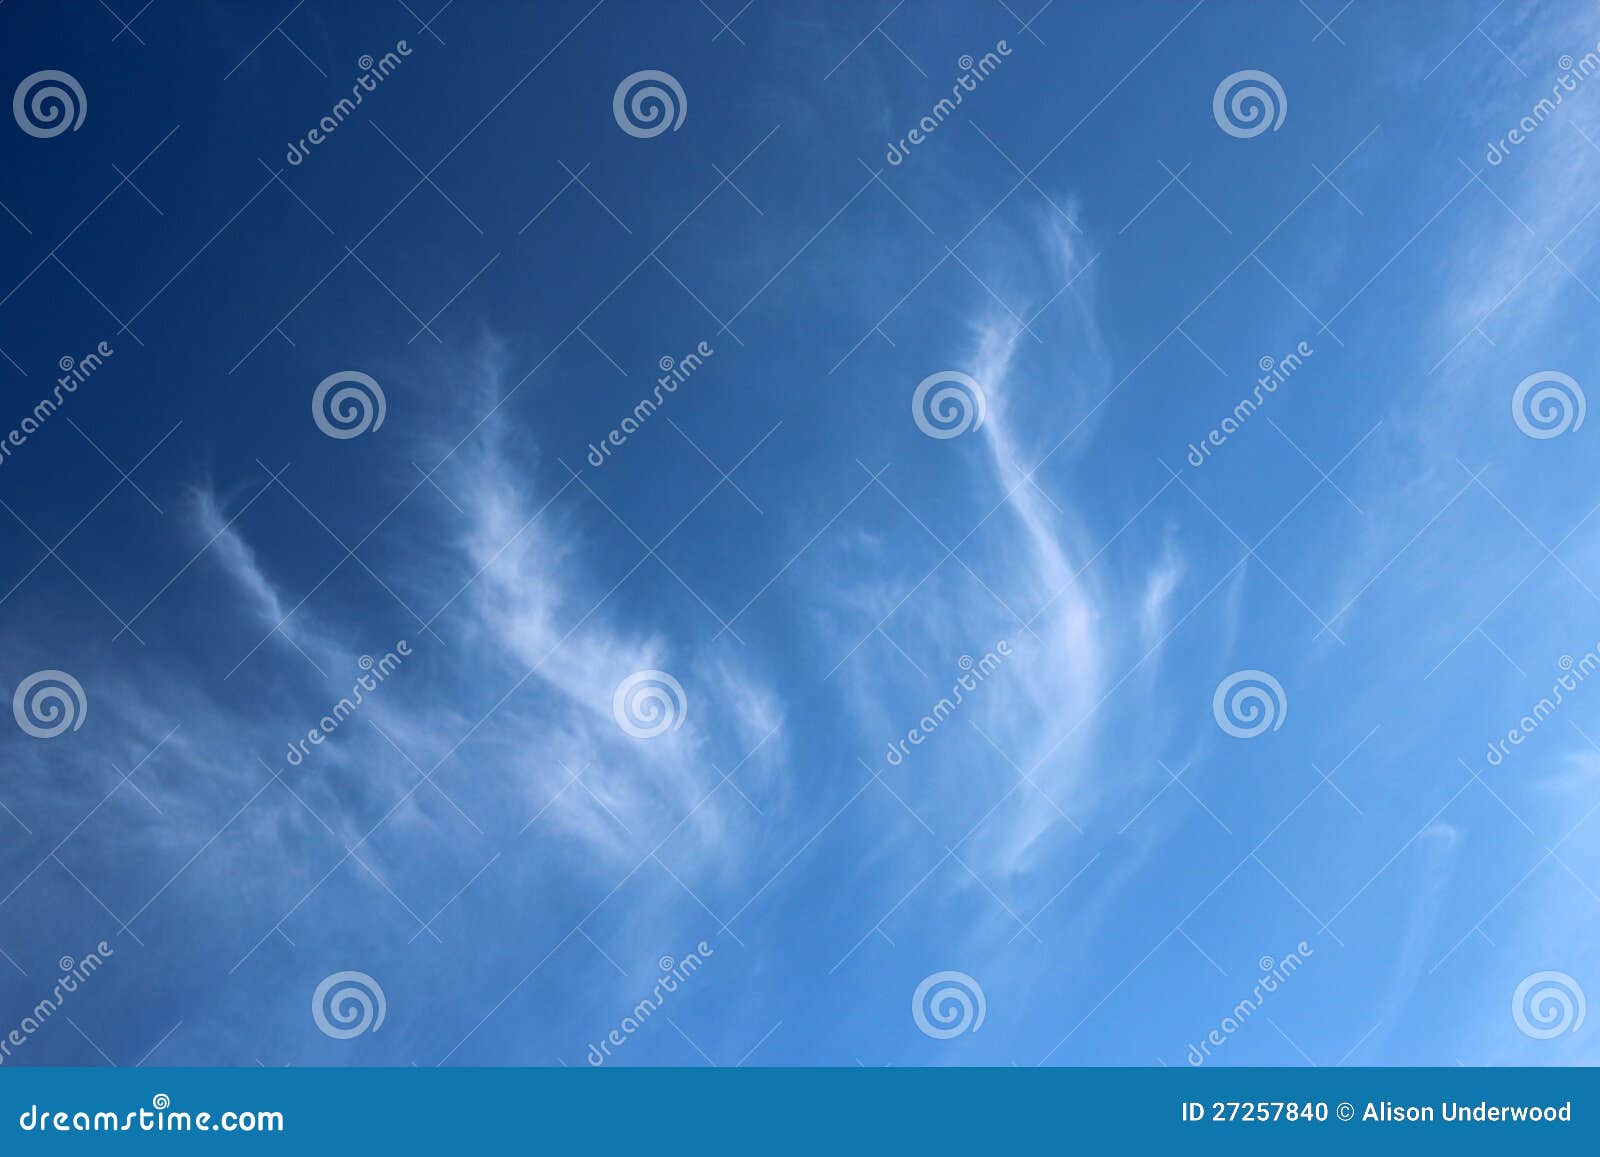 cirrus clouds in blue sky